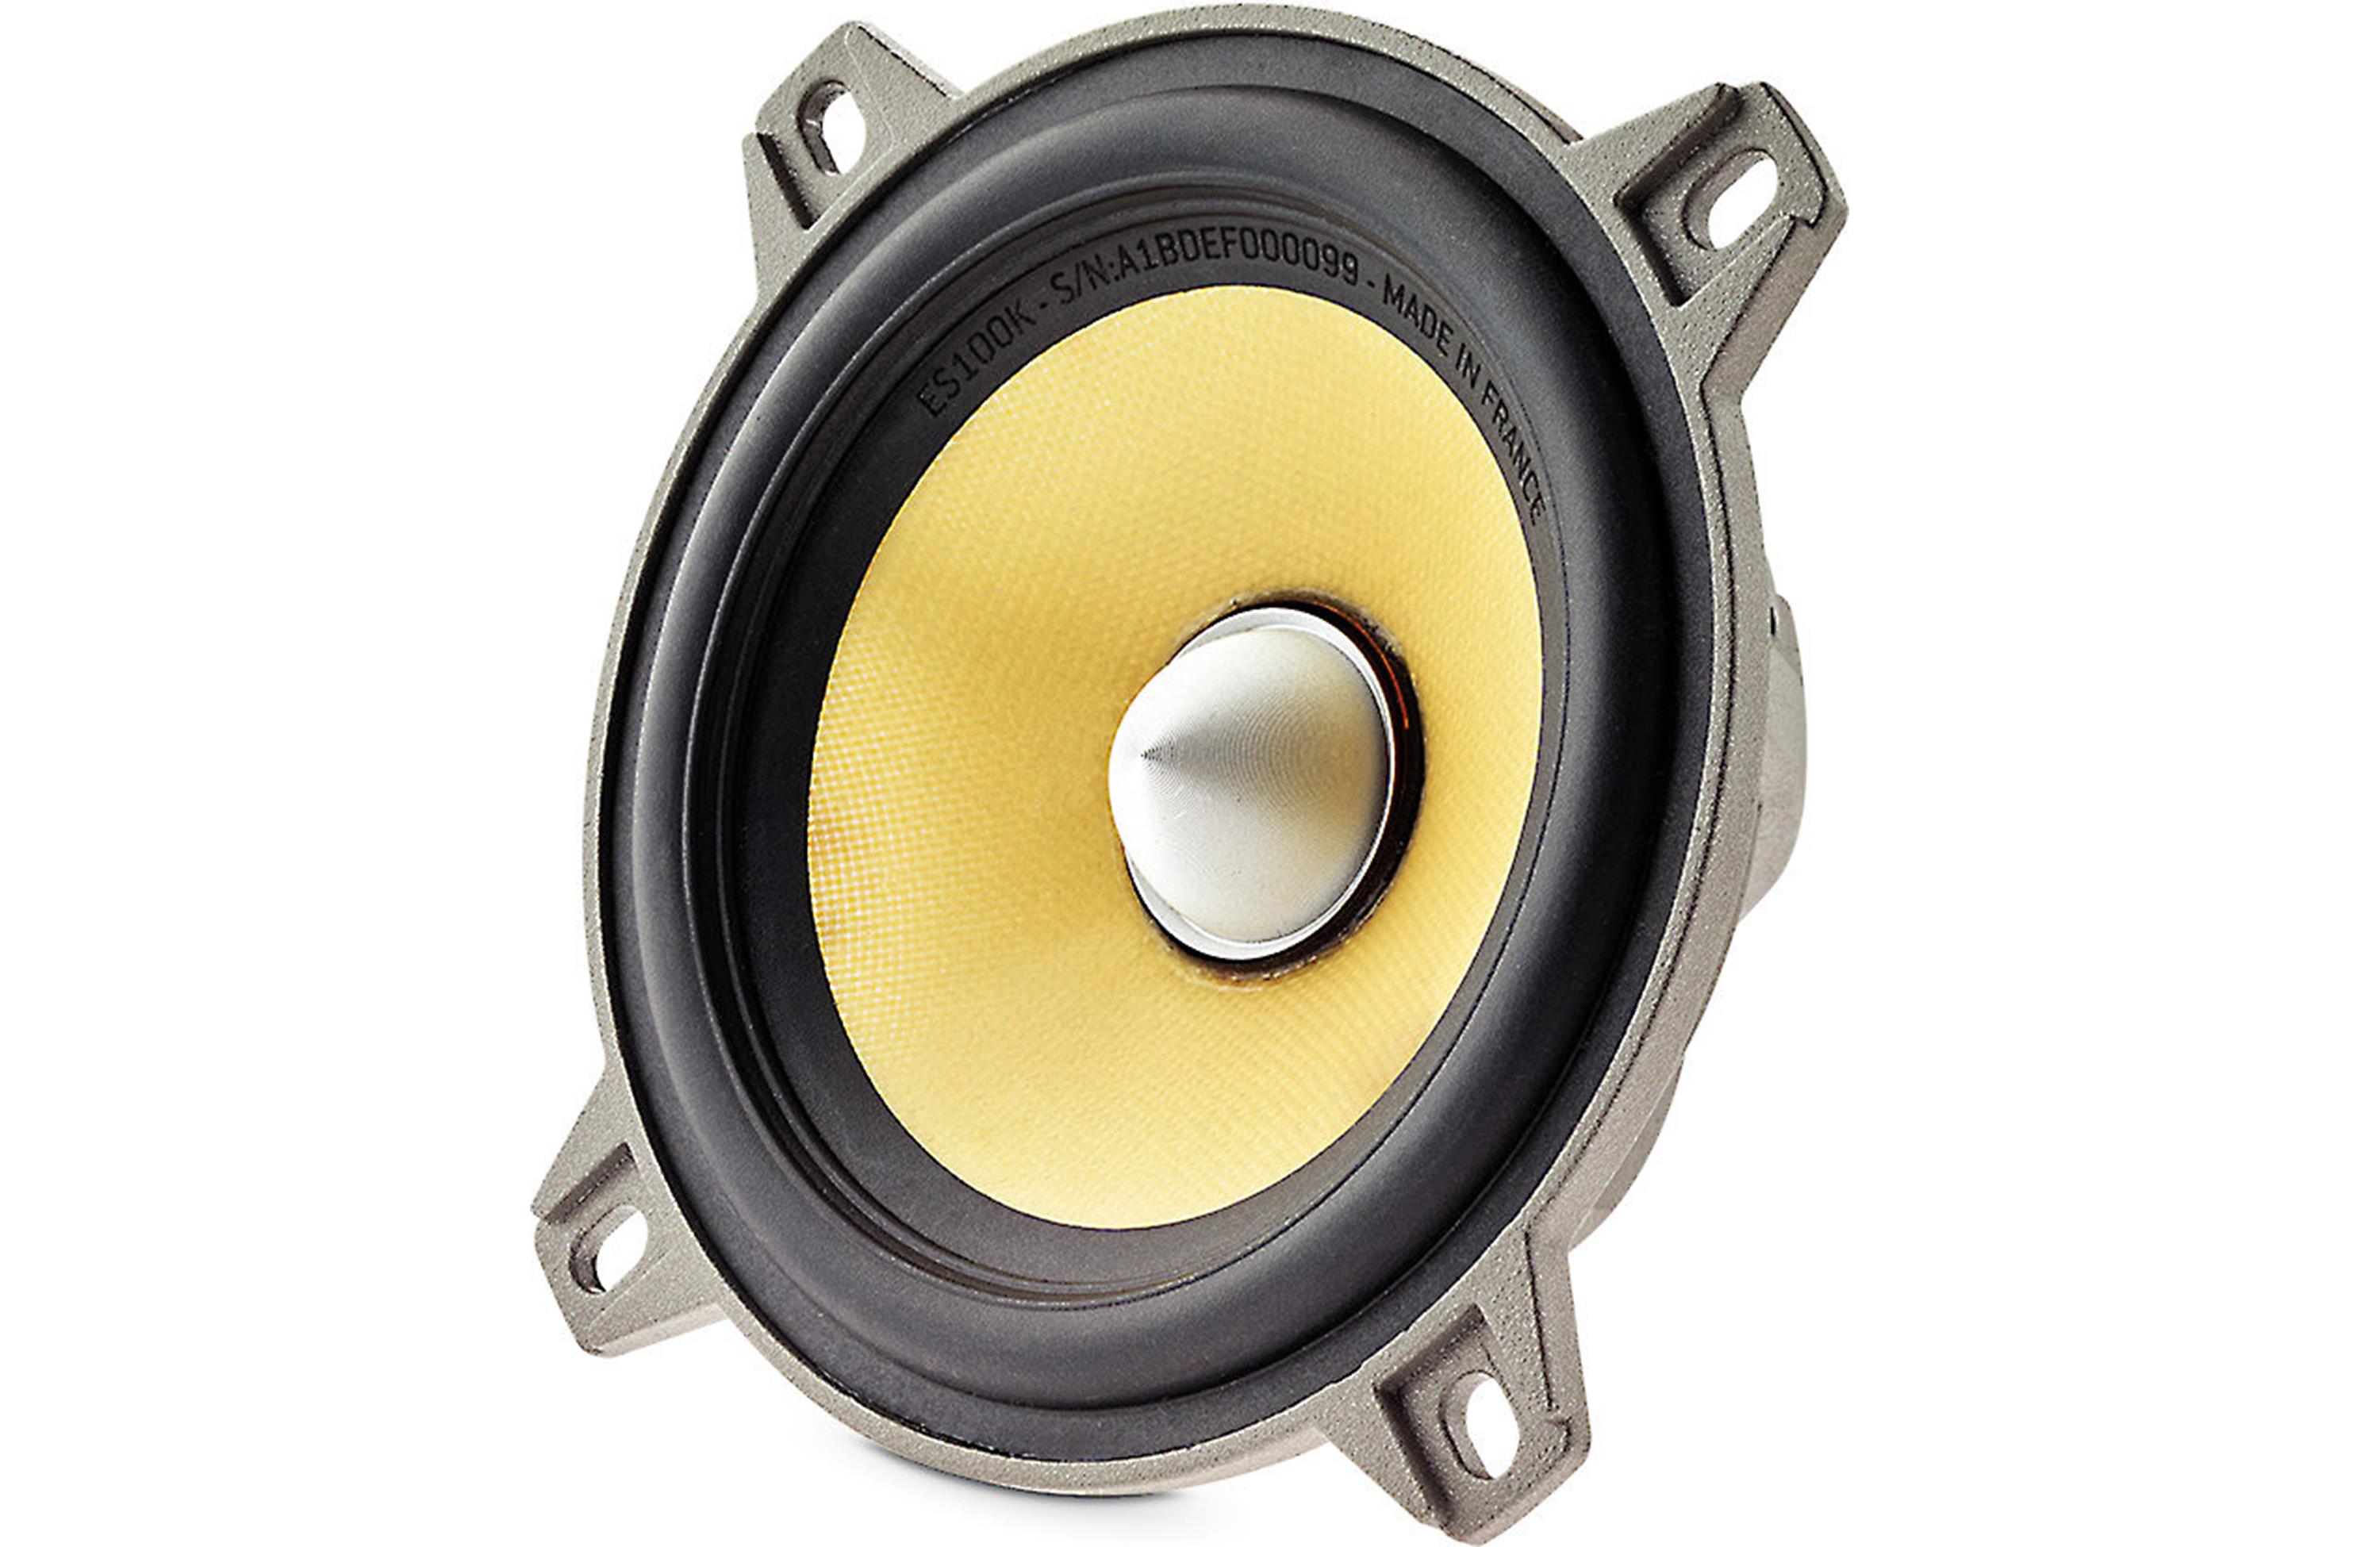 Focal ES 100 K 4 Inch 2Way Component Kit Component car speaker